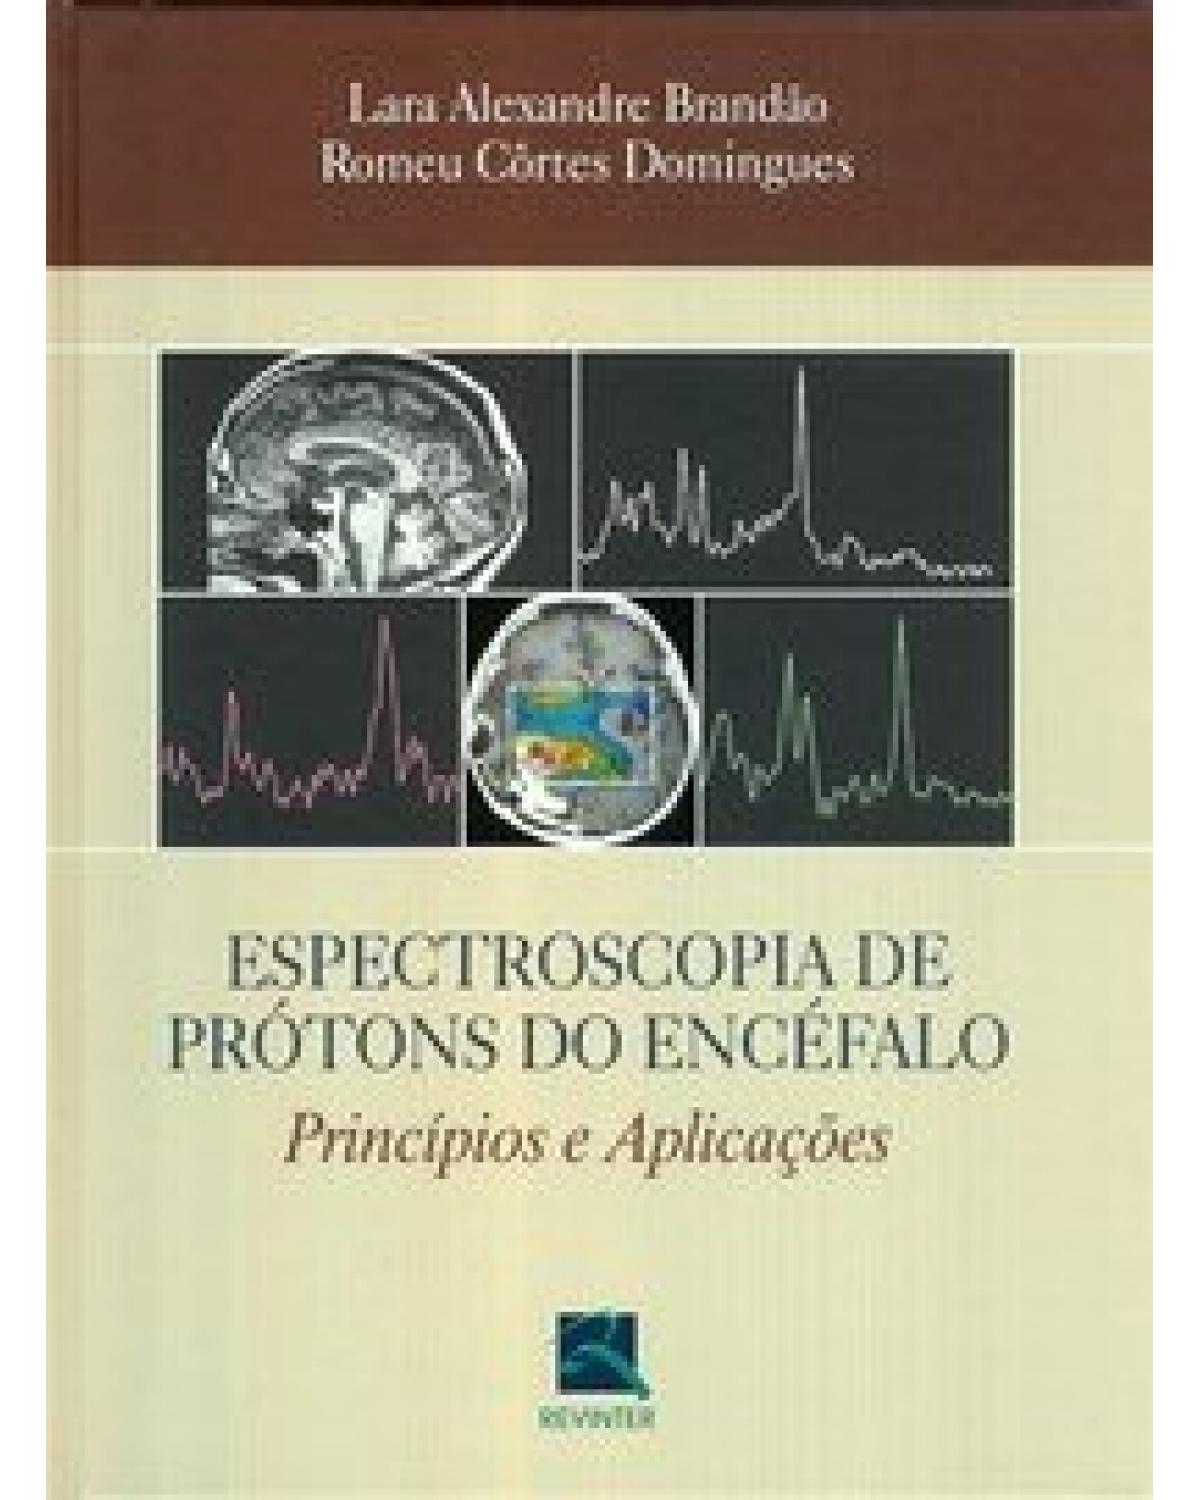 Espectroscopia de prótons do encéfalo - princípios e aplicações - 1ª Edição | 2002